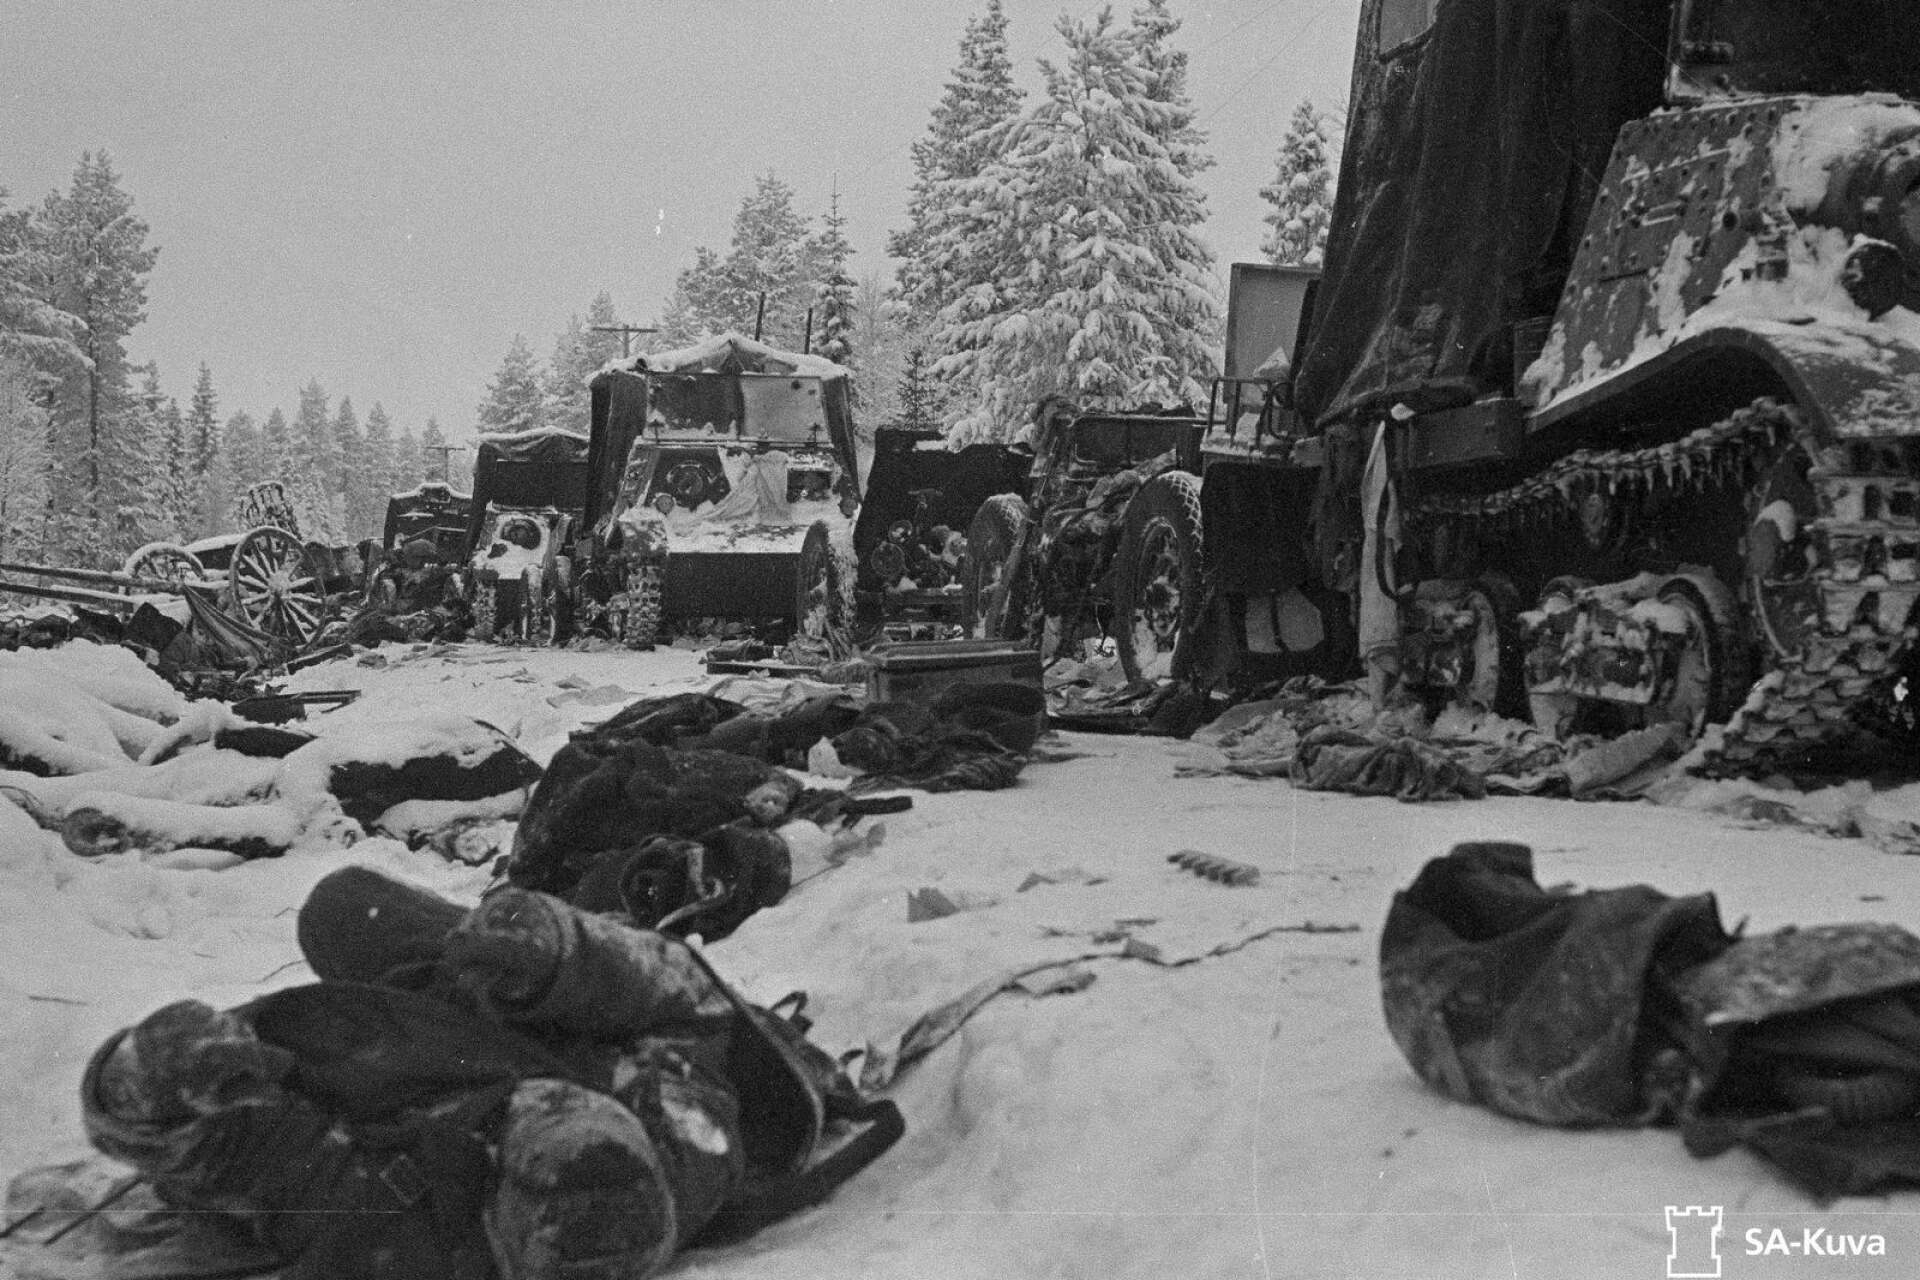 Finska vinterkriget utkämpades mellan Finland och Sovjetunionen 1939-1940. 